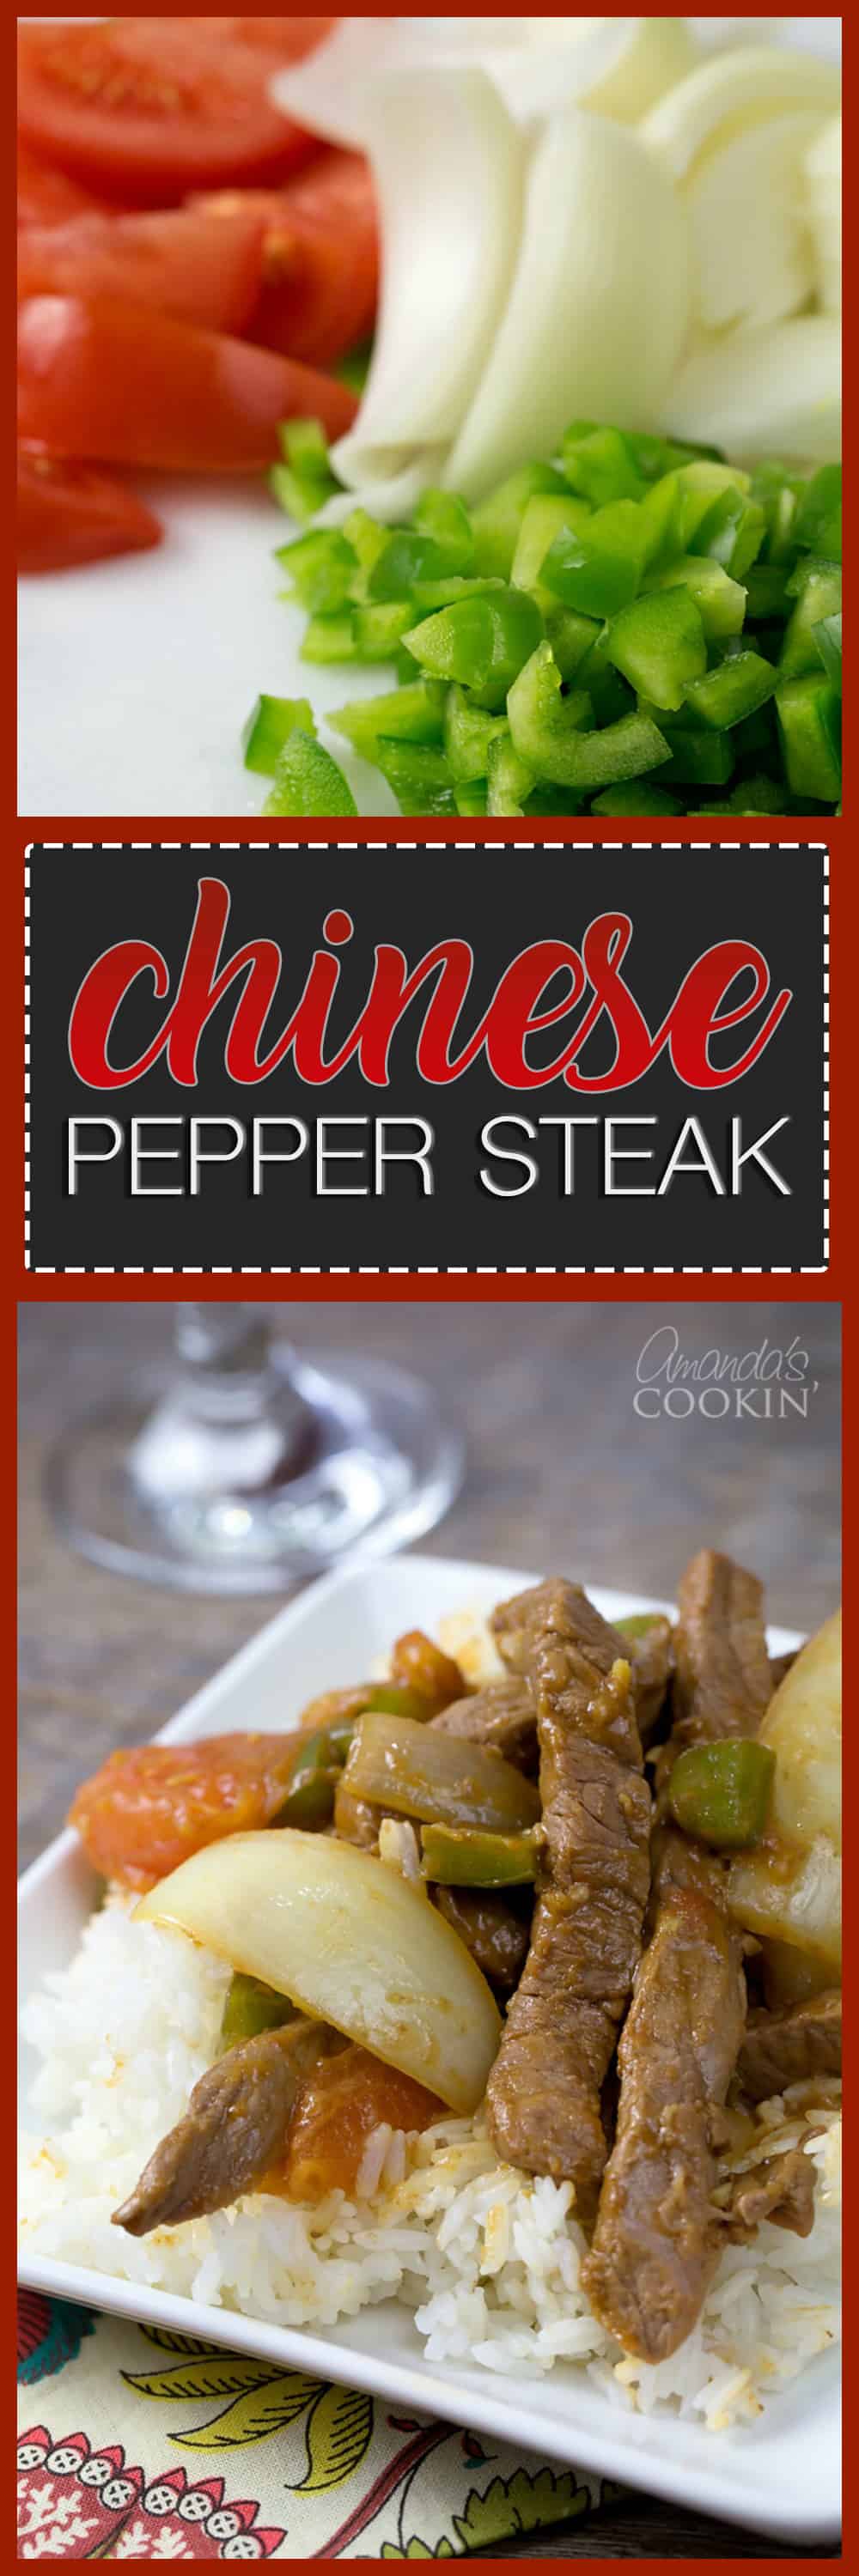 Chinese Pepper Steak: restaurant inspired stir fry at home